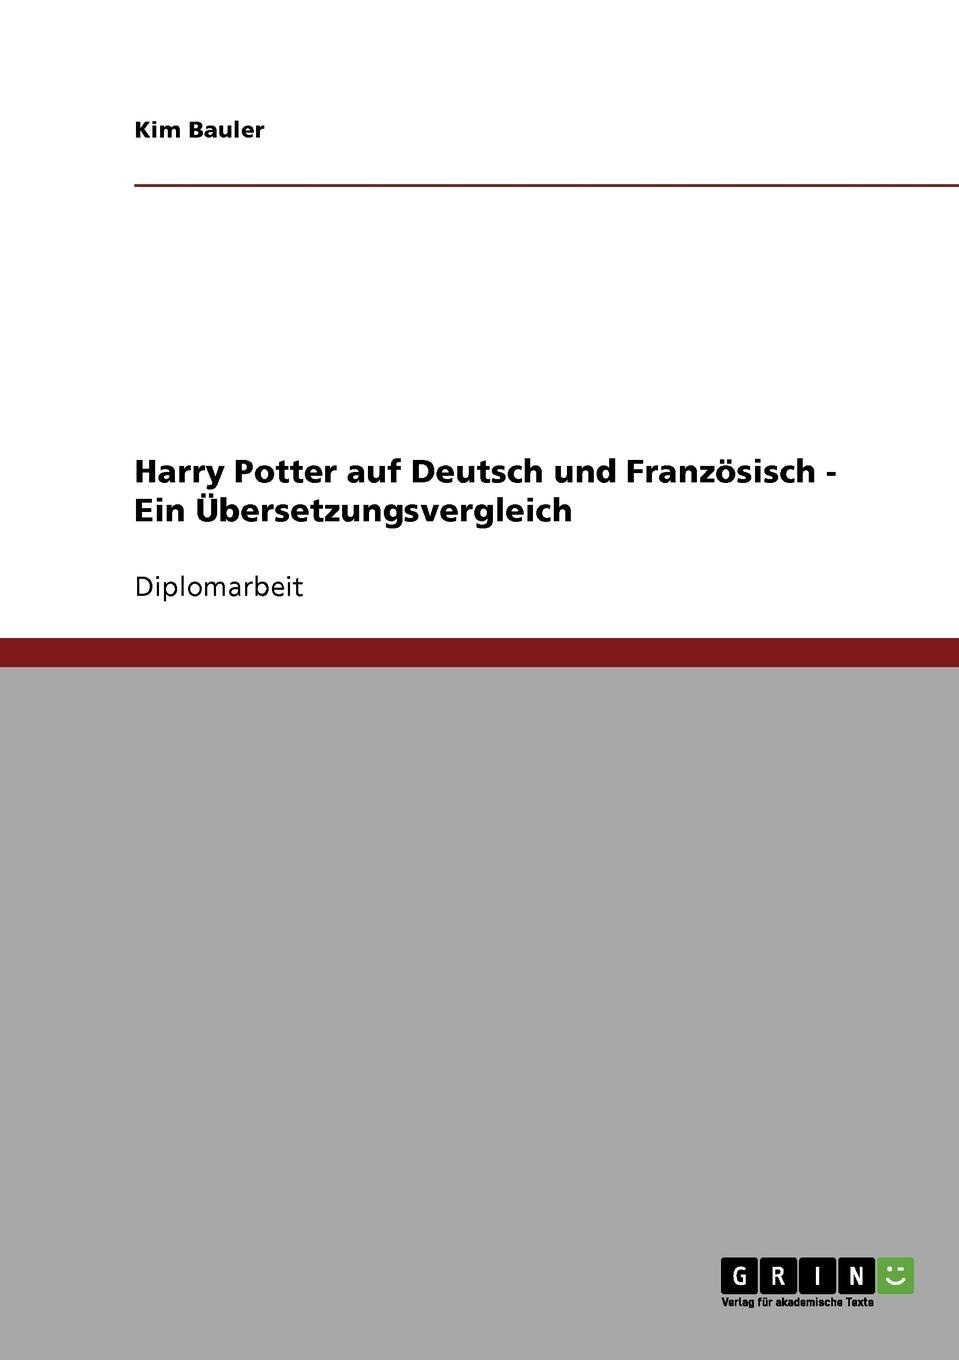 Harry Potter auf Deutsch und Franzosisch. Ein Ubersetzungsvergleich.